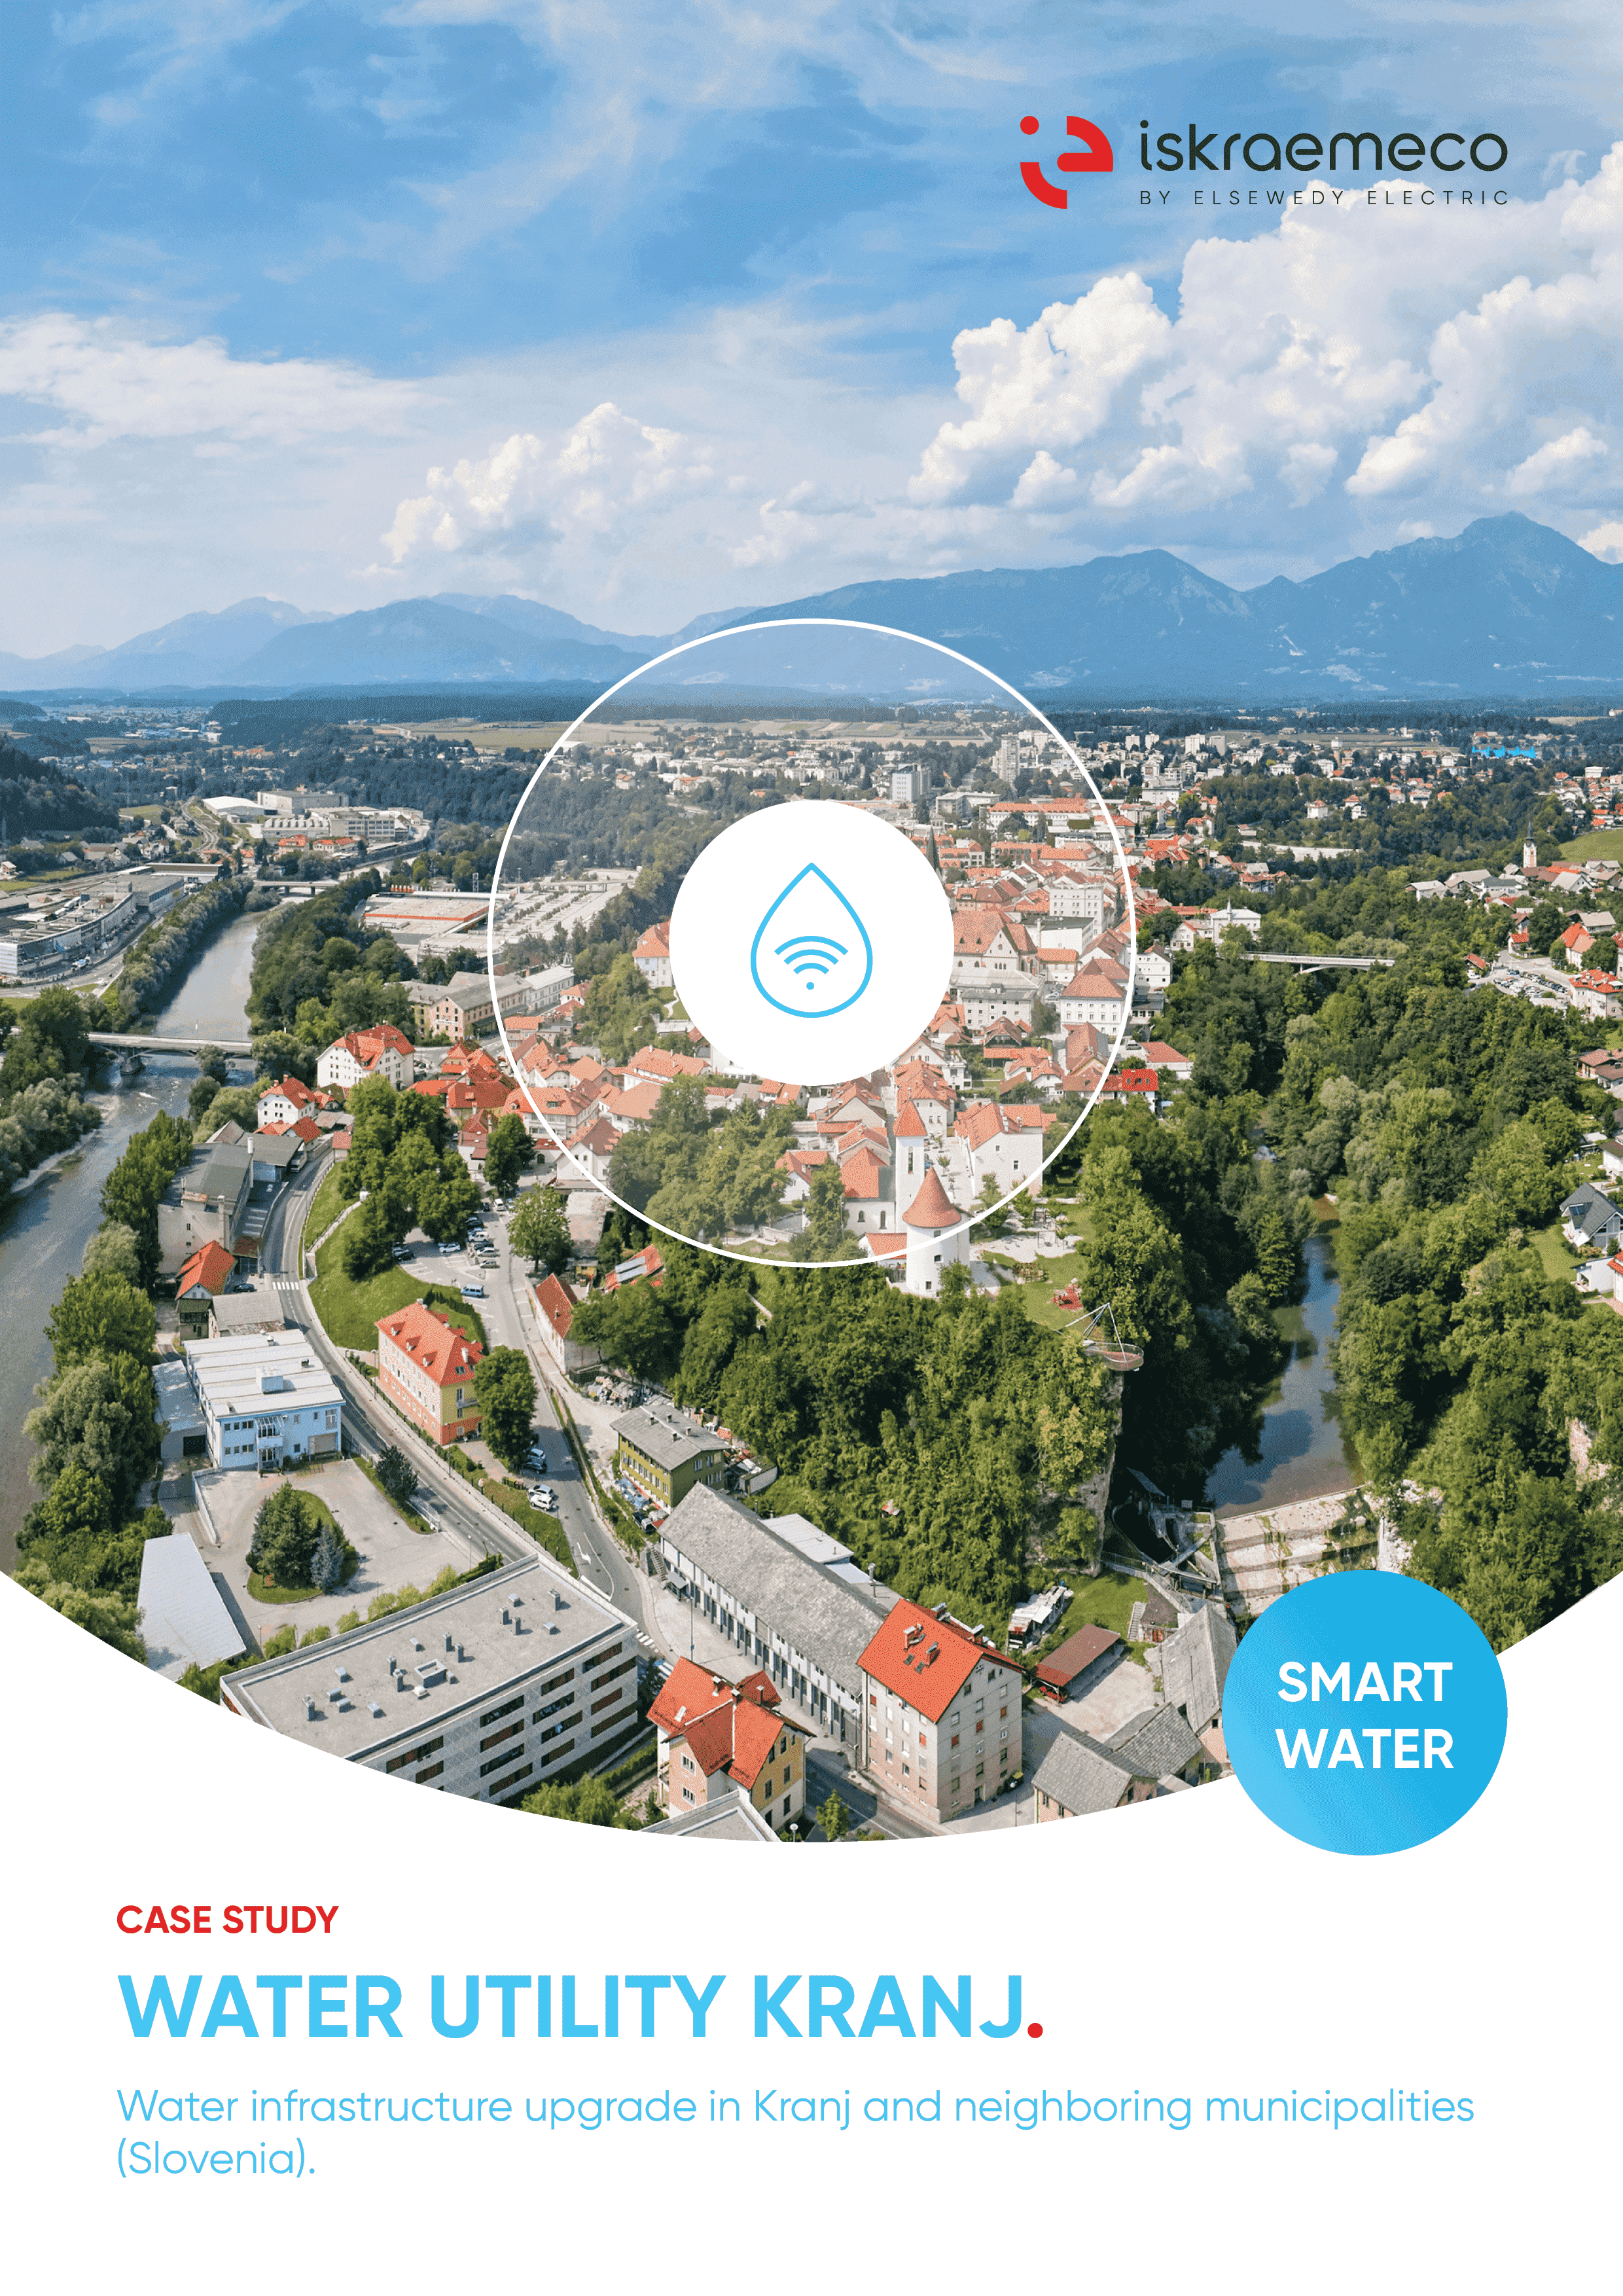 Potenziamento dell'infrastruttura idrica a Kranj, Slovenia